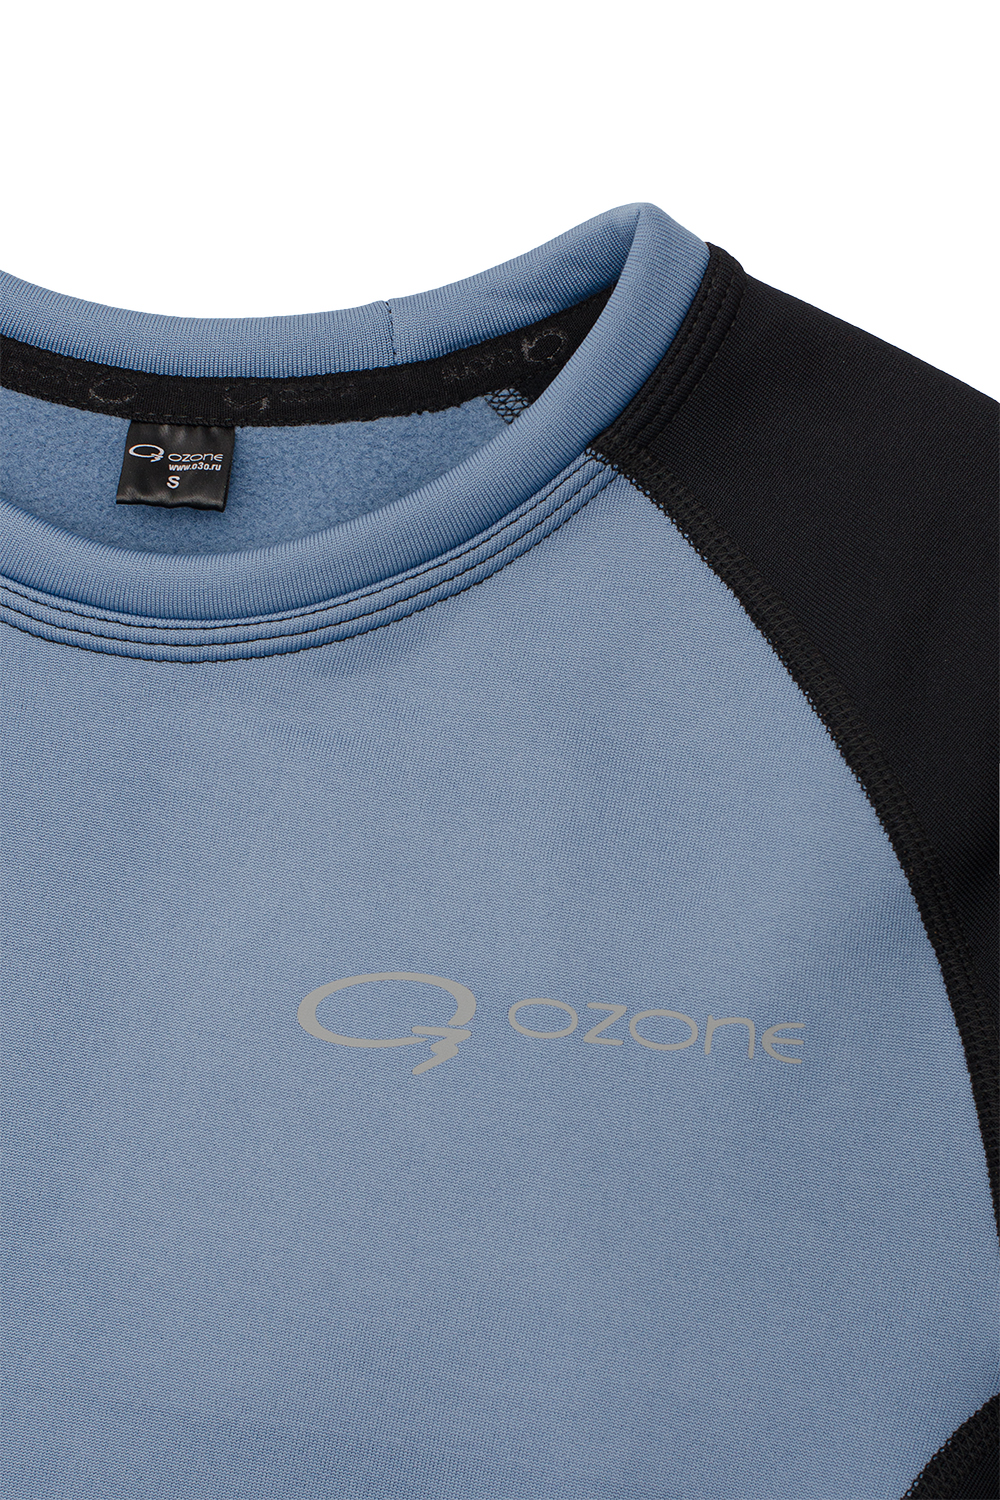 Мужской джемпер термобелье Spot купить в магазине спортивной одежды O3 Ozone